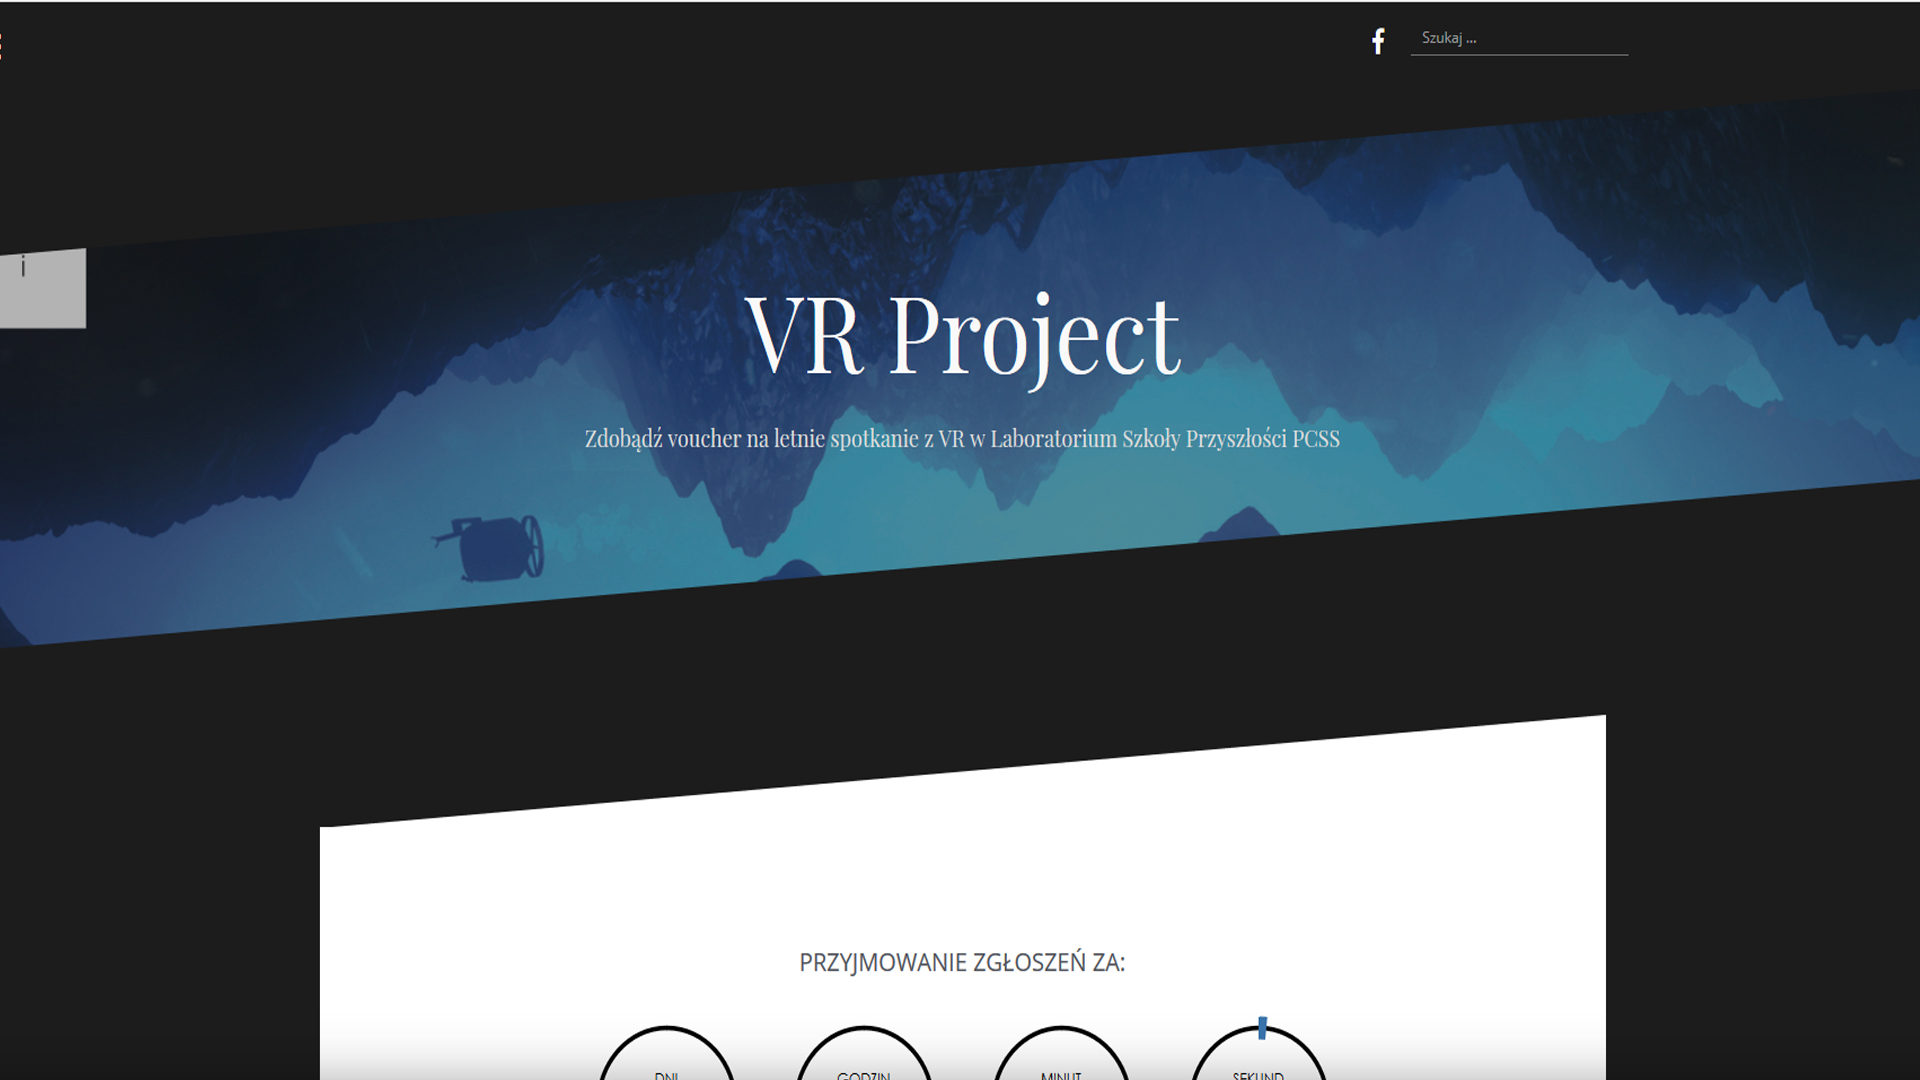 Konkurs VR Project organizowany przez Laboratorium Szkoły Przyszłości PCSS